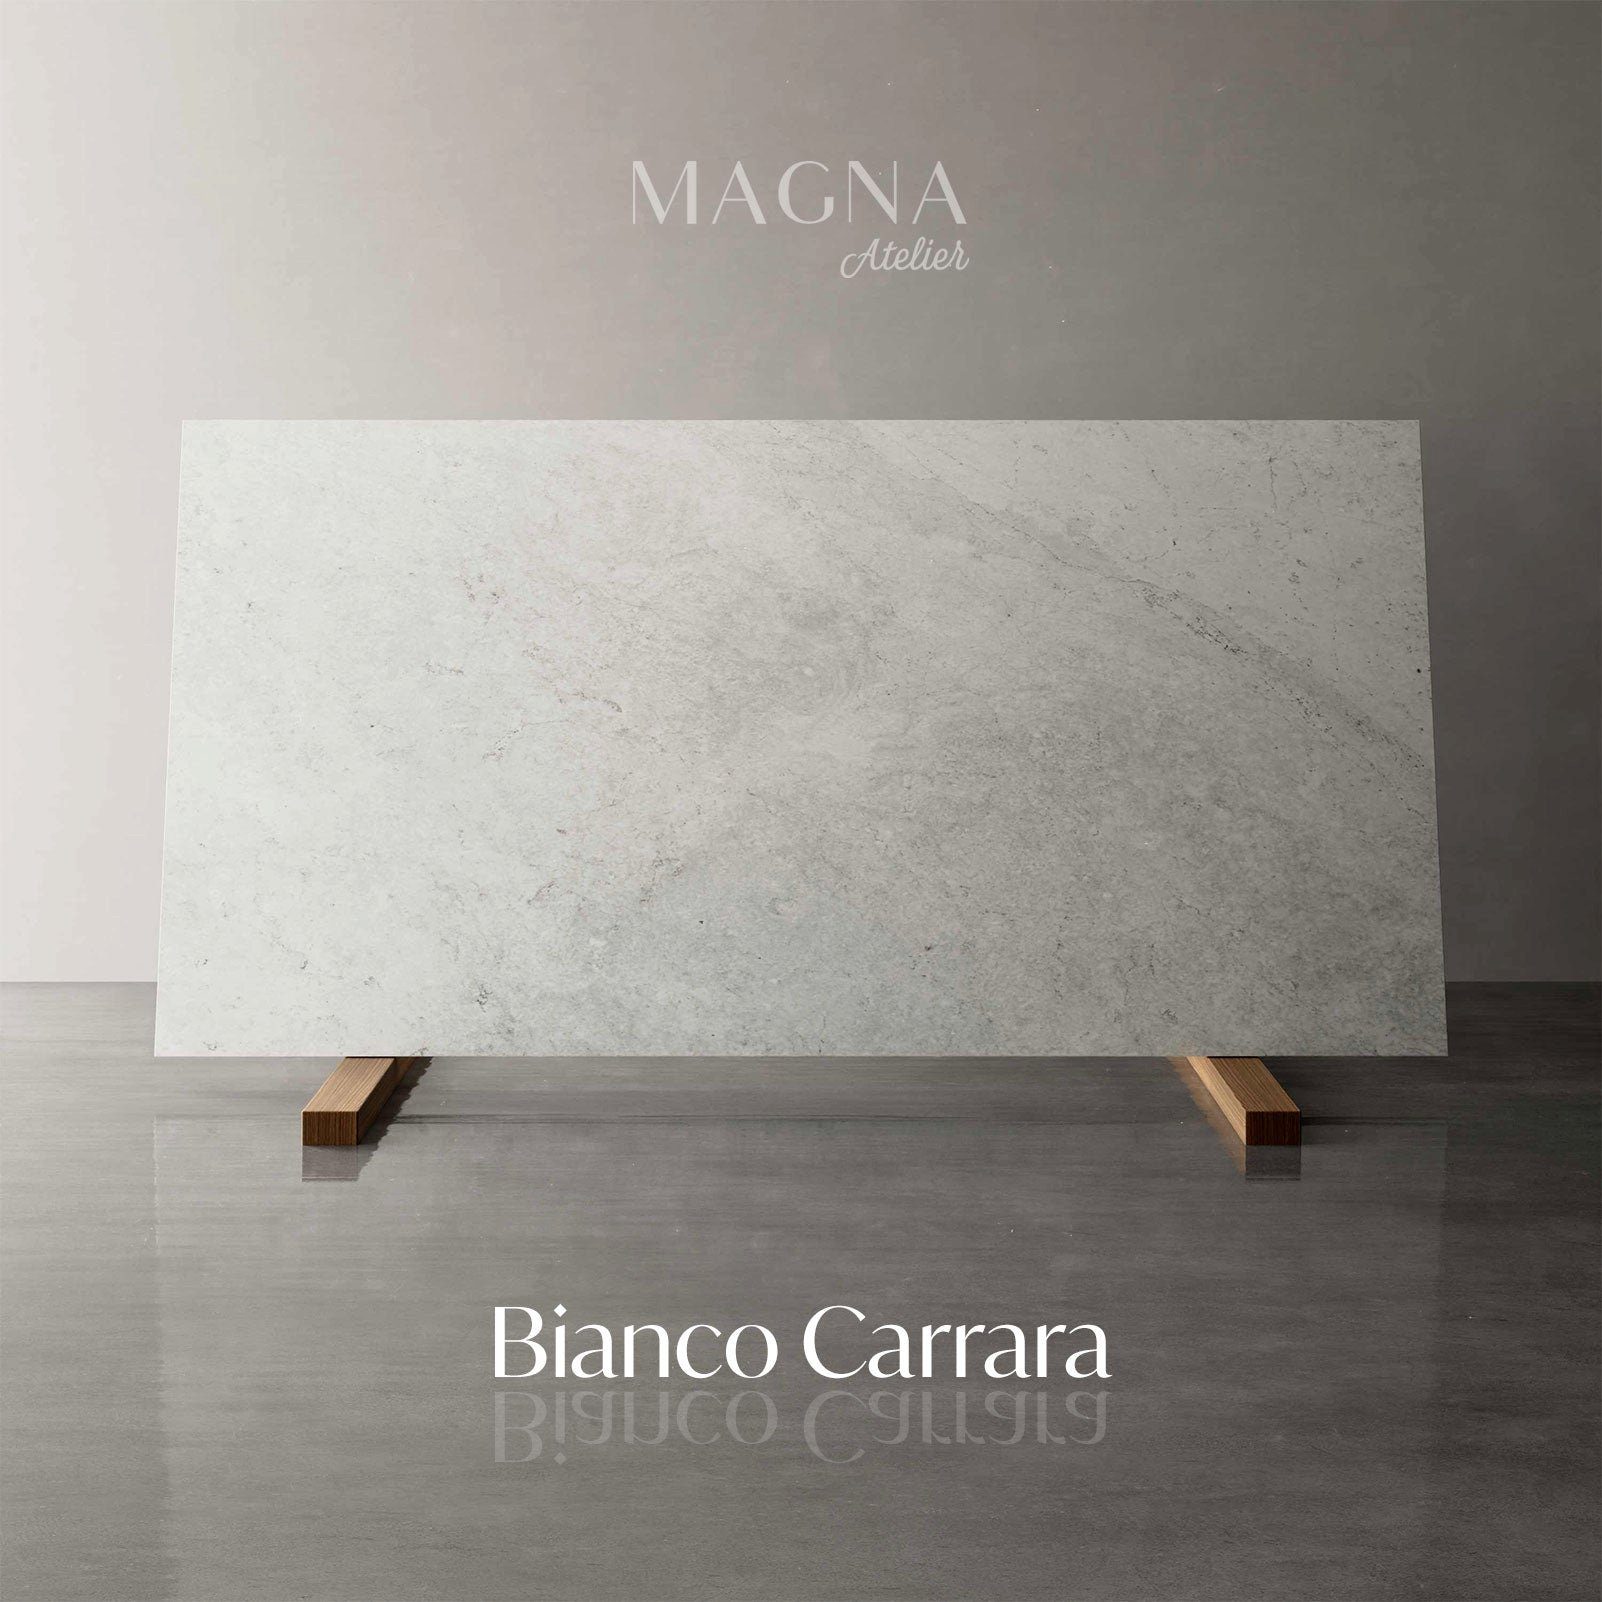 ECHTEM Bianco Carrara Beistelltisch Metallgestell, Atelier Ø52x66cm mit MAGNA gold rund, PARIS Beistelltisch MARMOR,